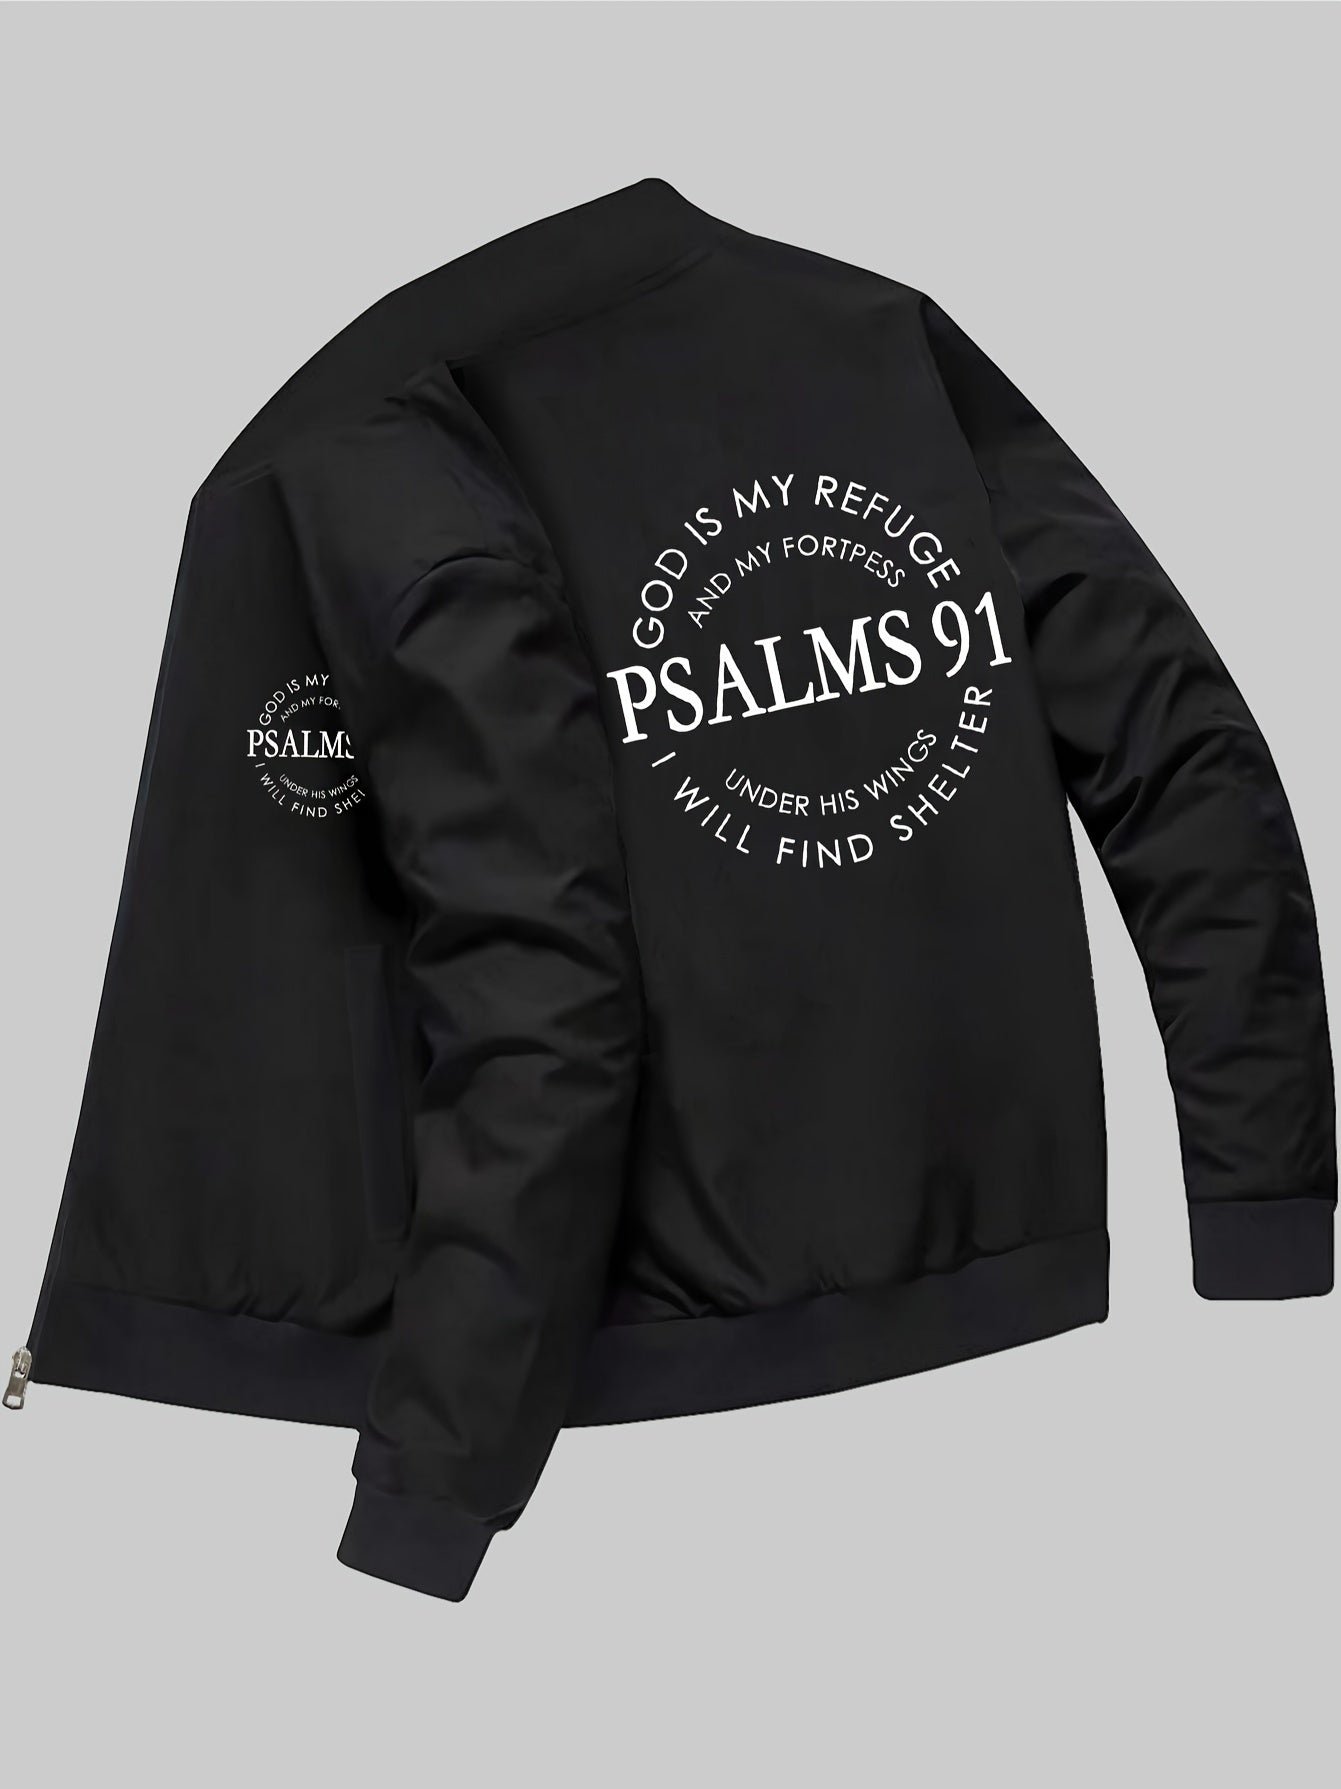 Psalms 91 Men's Christian Jacket claimedbygoddesigns